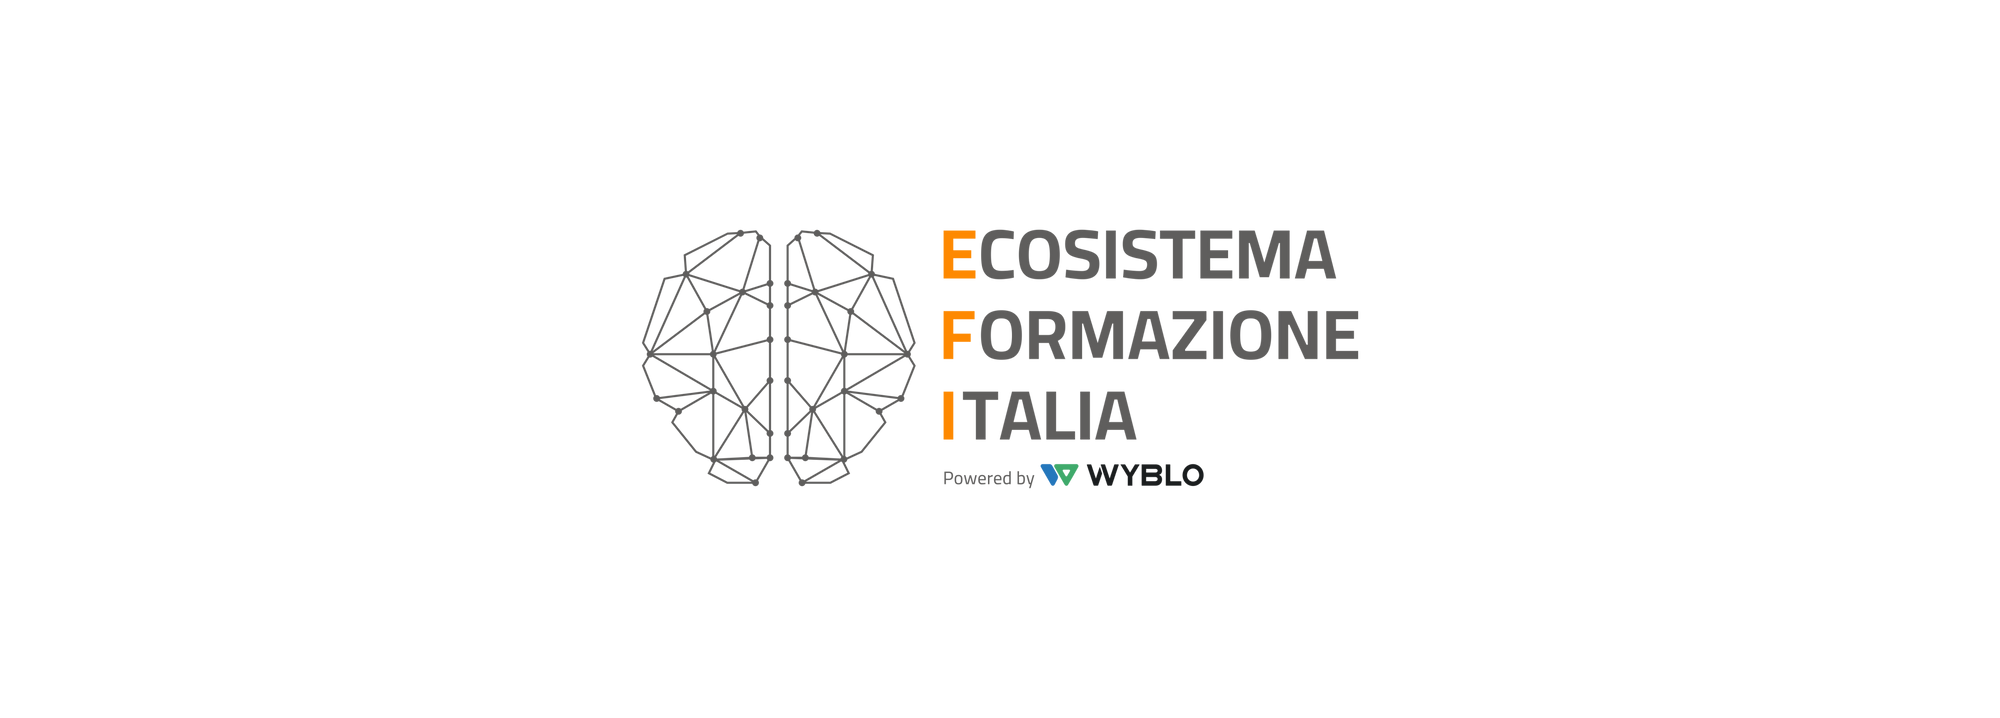 Ecosistema Formazione Italia - Madeleine Prothero